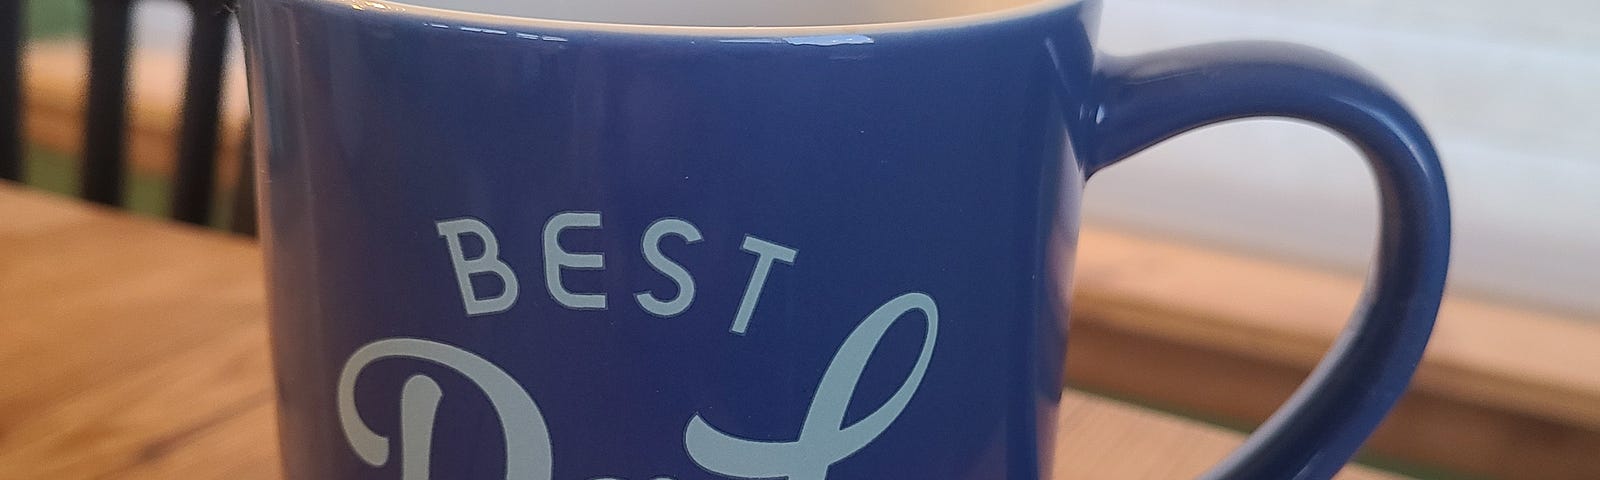 a blue coffee mug reading “Best Dad Ever”